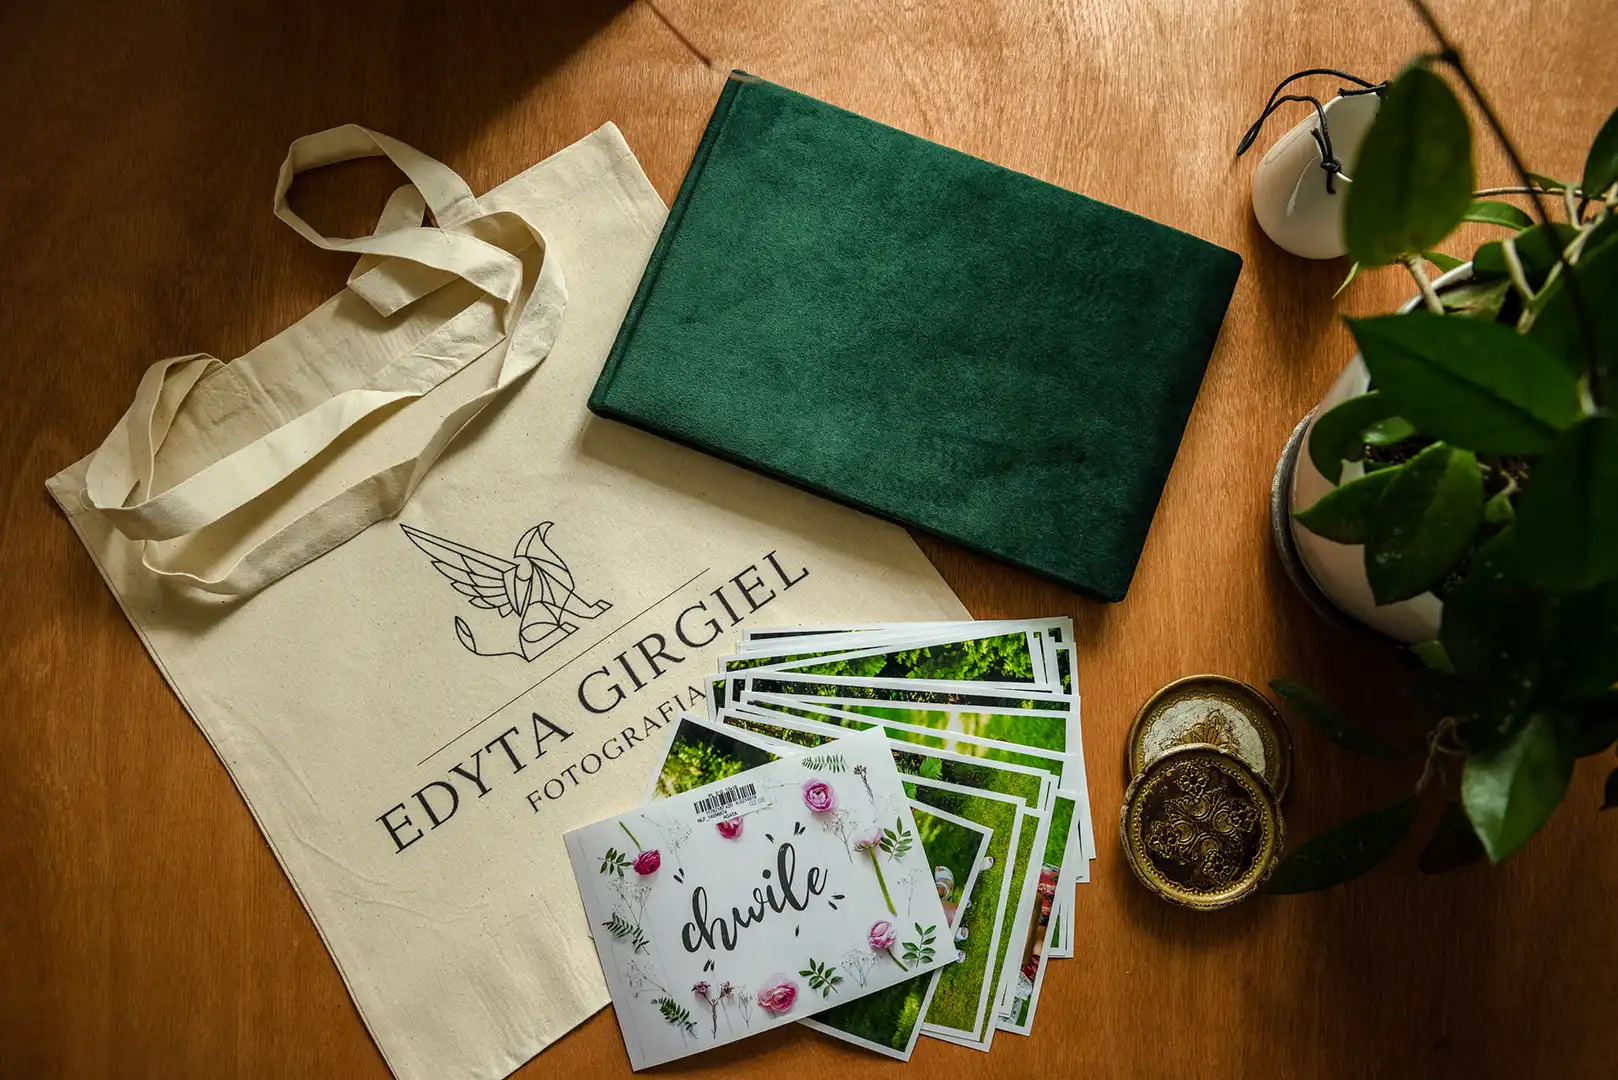 Elegancki zestaw fotograficzny Edyty Girgiel z albumem w zielonej okładce, ekologiczną torbą i selekcją zdjęć, prezentujący profesjonalizm i dbałość o każdy detal.